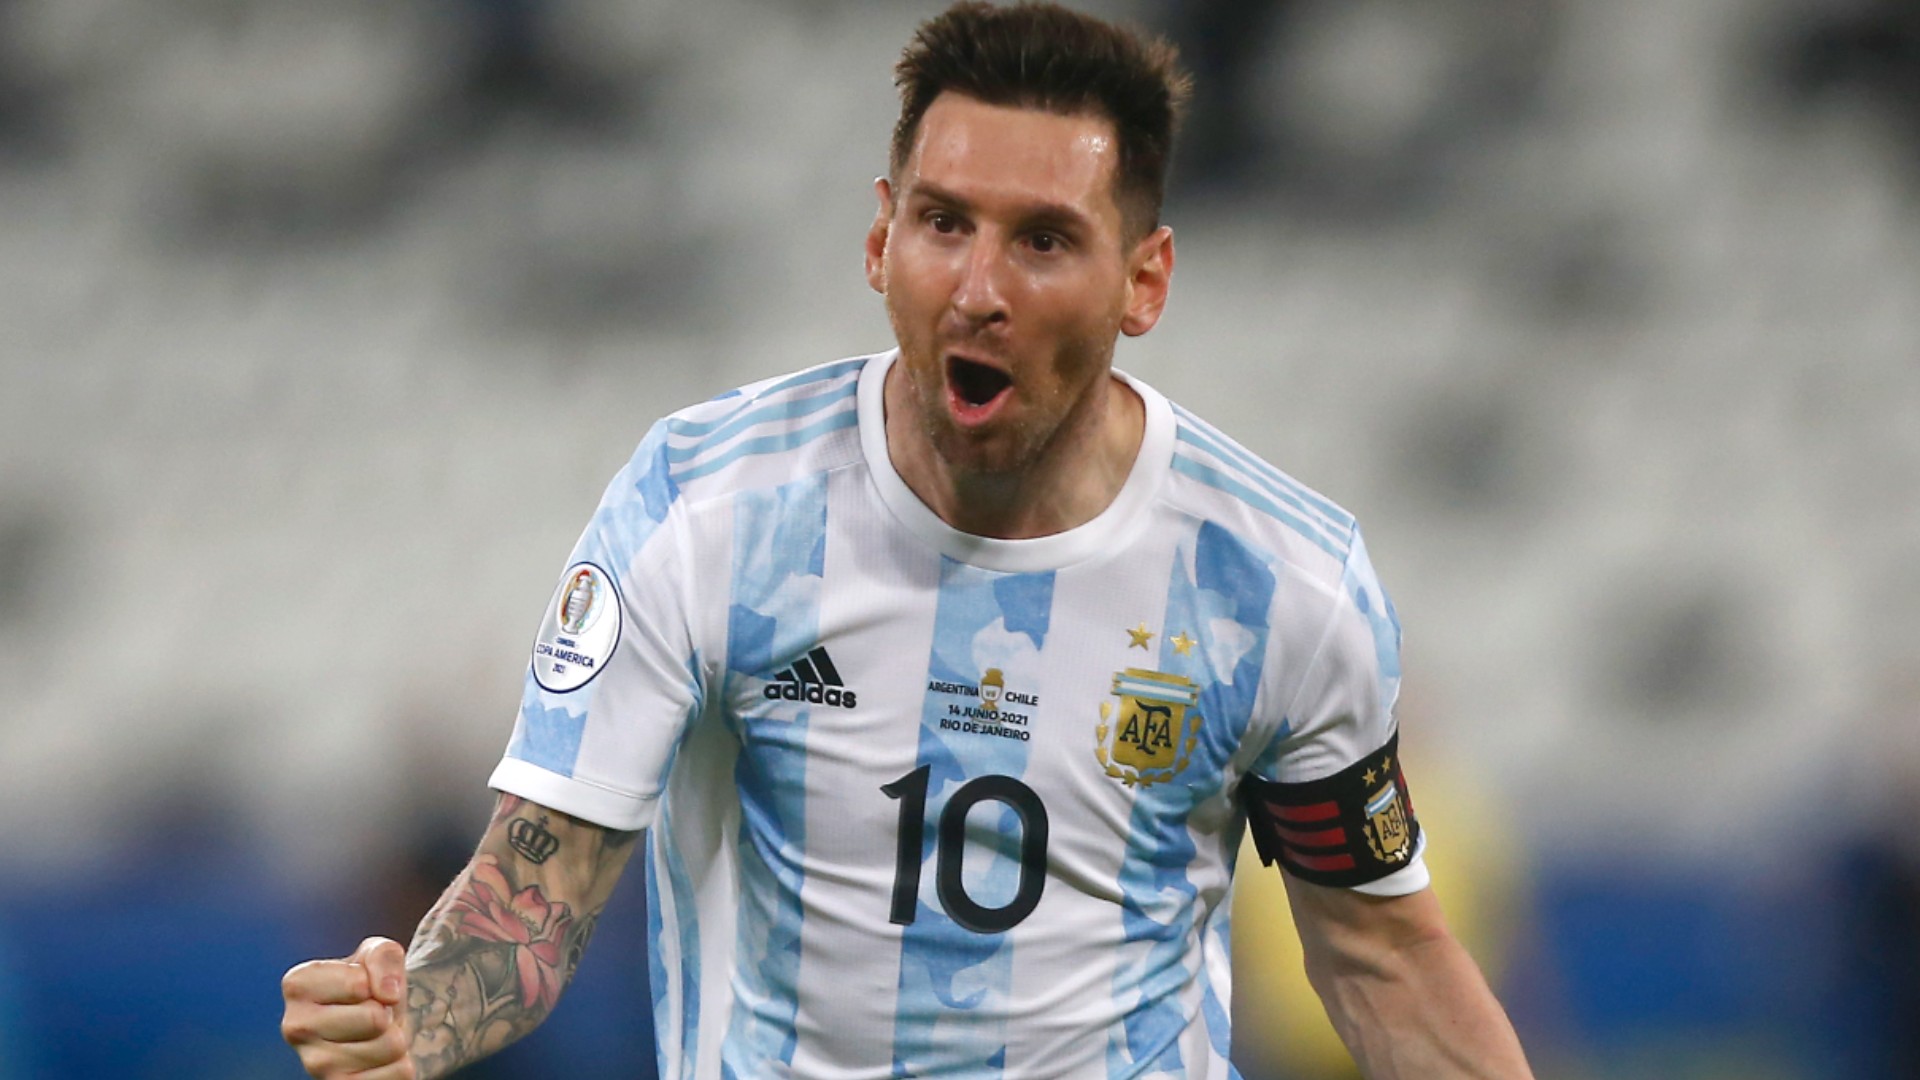 Hình nền Messi đang chờ đón bạn! Bạn sẽ có những hình nền đầy sáng tạo với những hình ảnh ấn tượng nhất về huyền thoại bóng đá này.